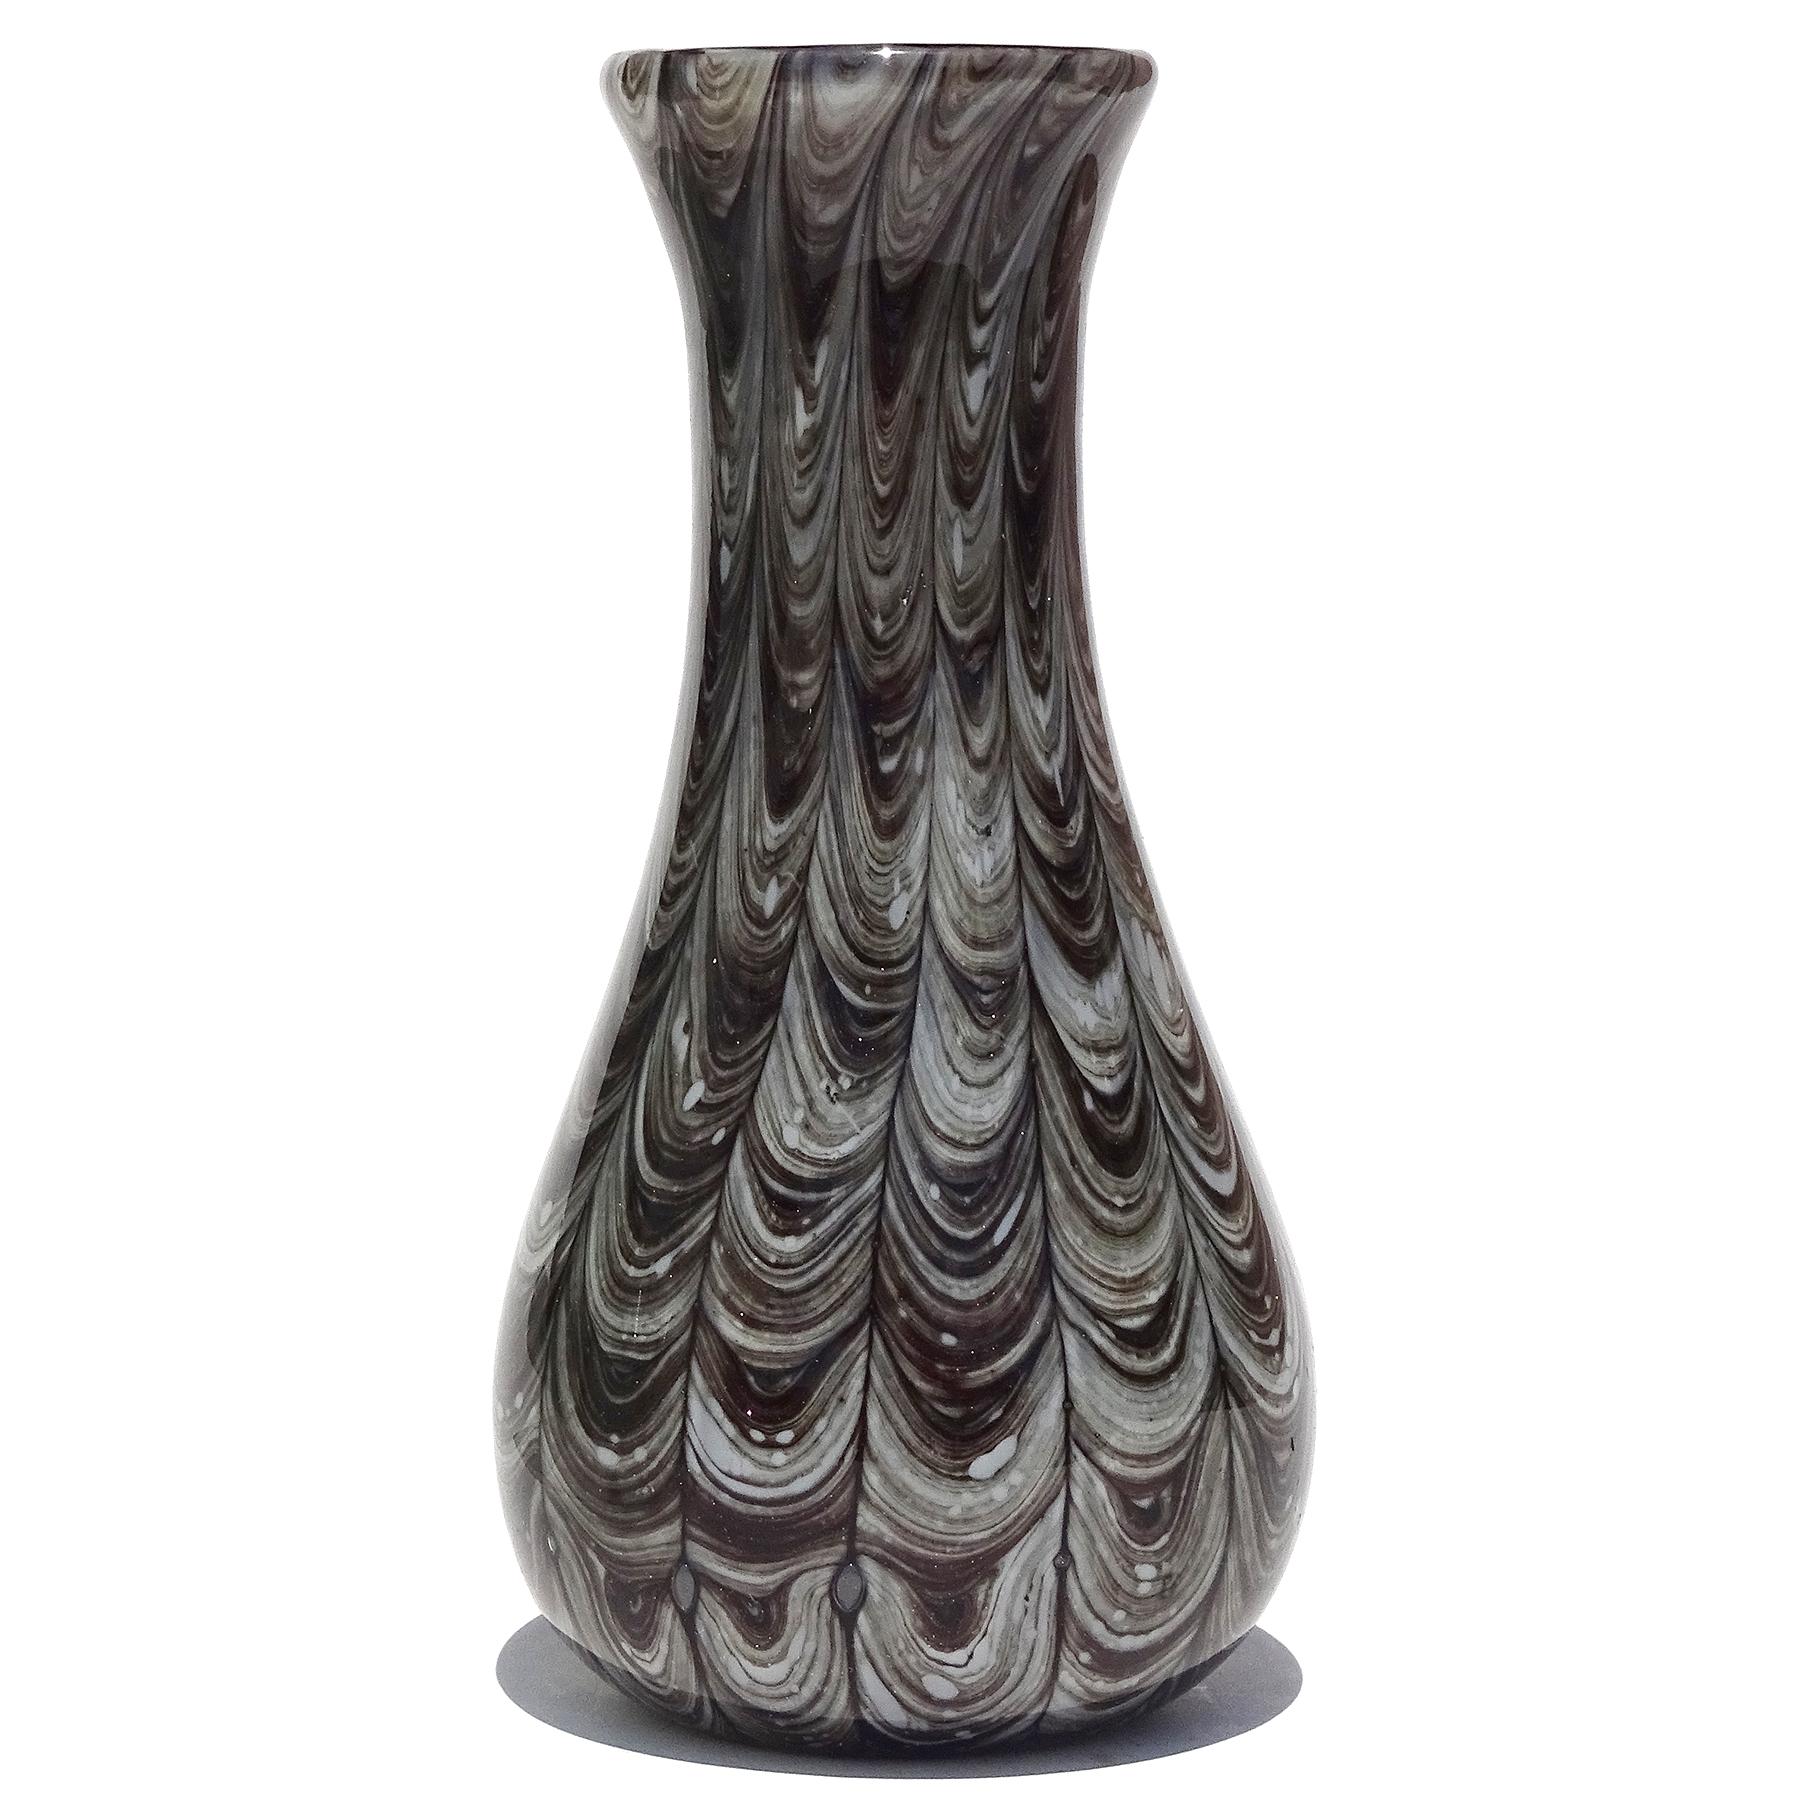 Schöne und seltene, Vintage Murano mundgeblasen Grautöne und Schwarz gefiederte Design italienische Kunst Glas Blumenvase. Dokumentiert für den Designer Ercole Barovier, für die Firma Barovier e Toso. Erstellt im Neolitico-Design, ca. 1954. Auf der